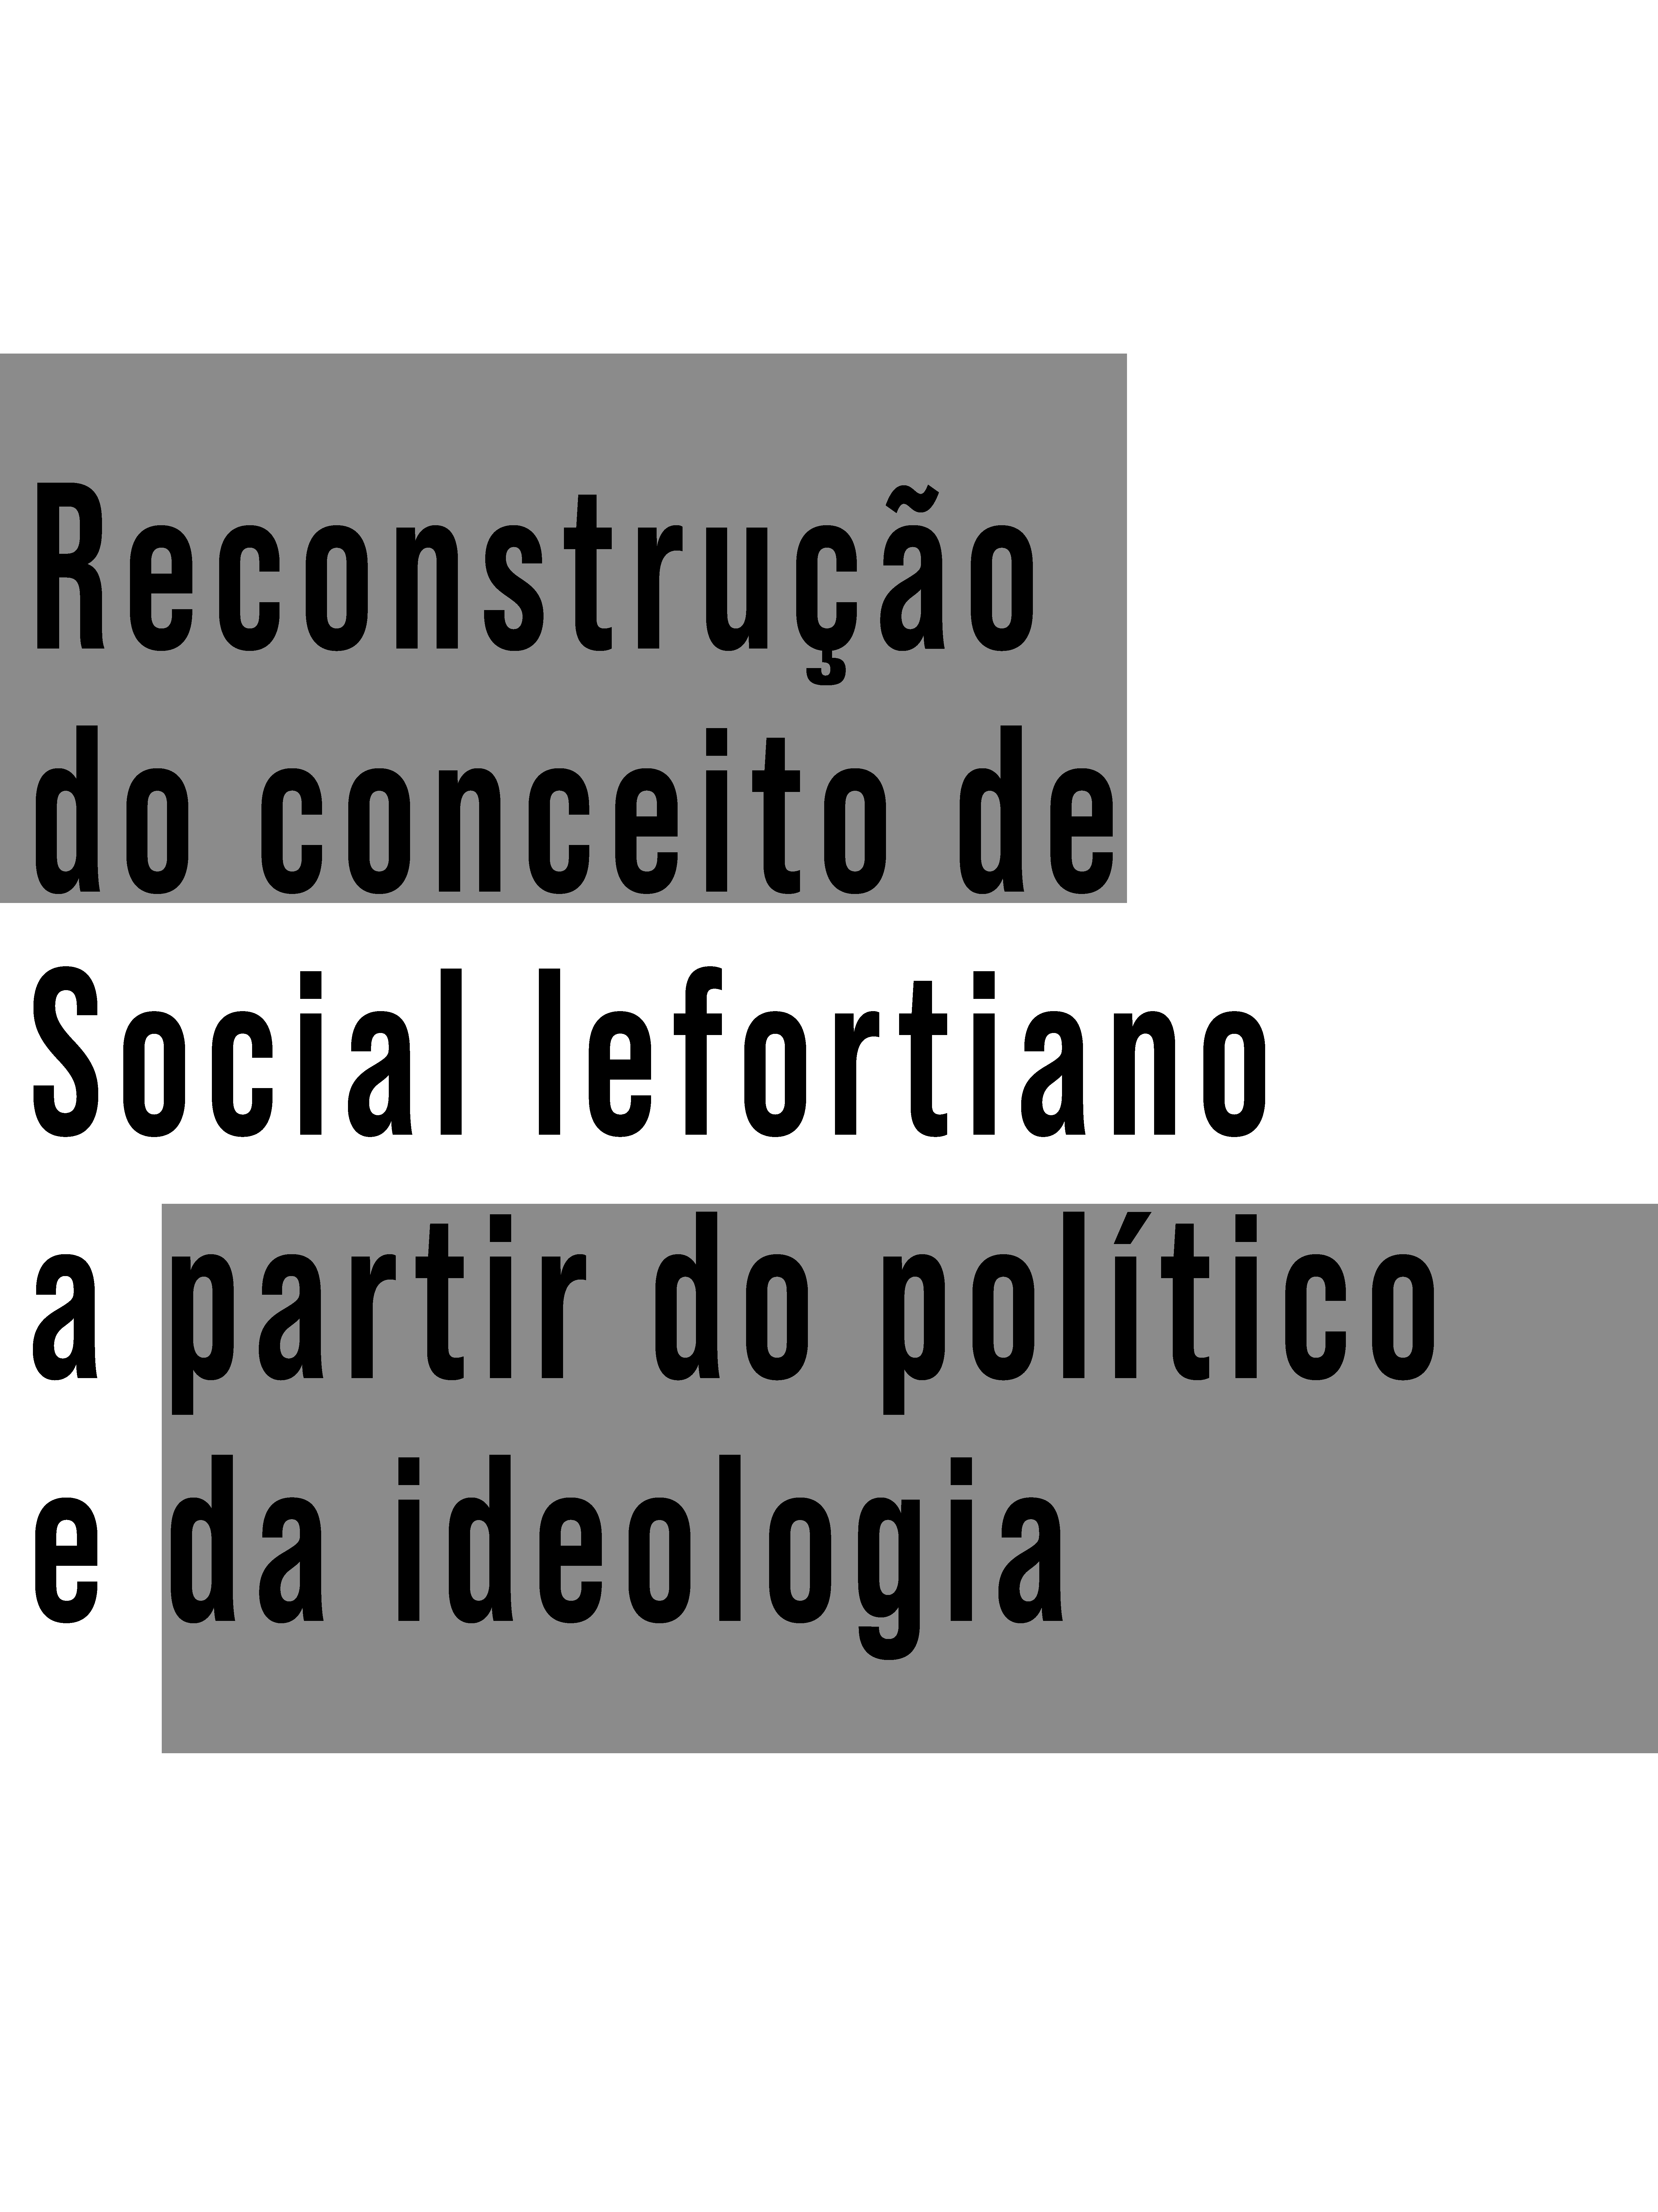 Reconstrução do conceito de Social lefortiano a partir do político e da ideologia